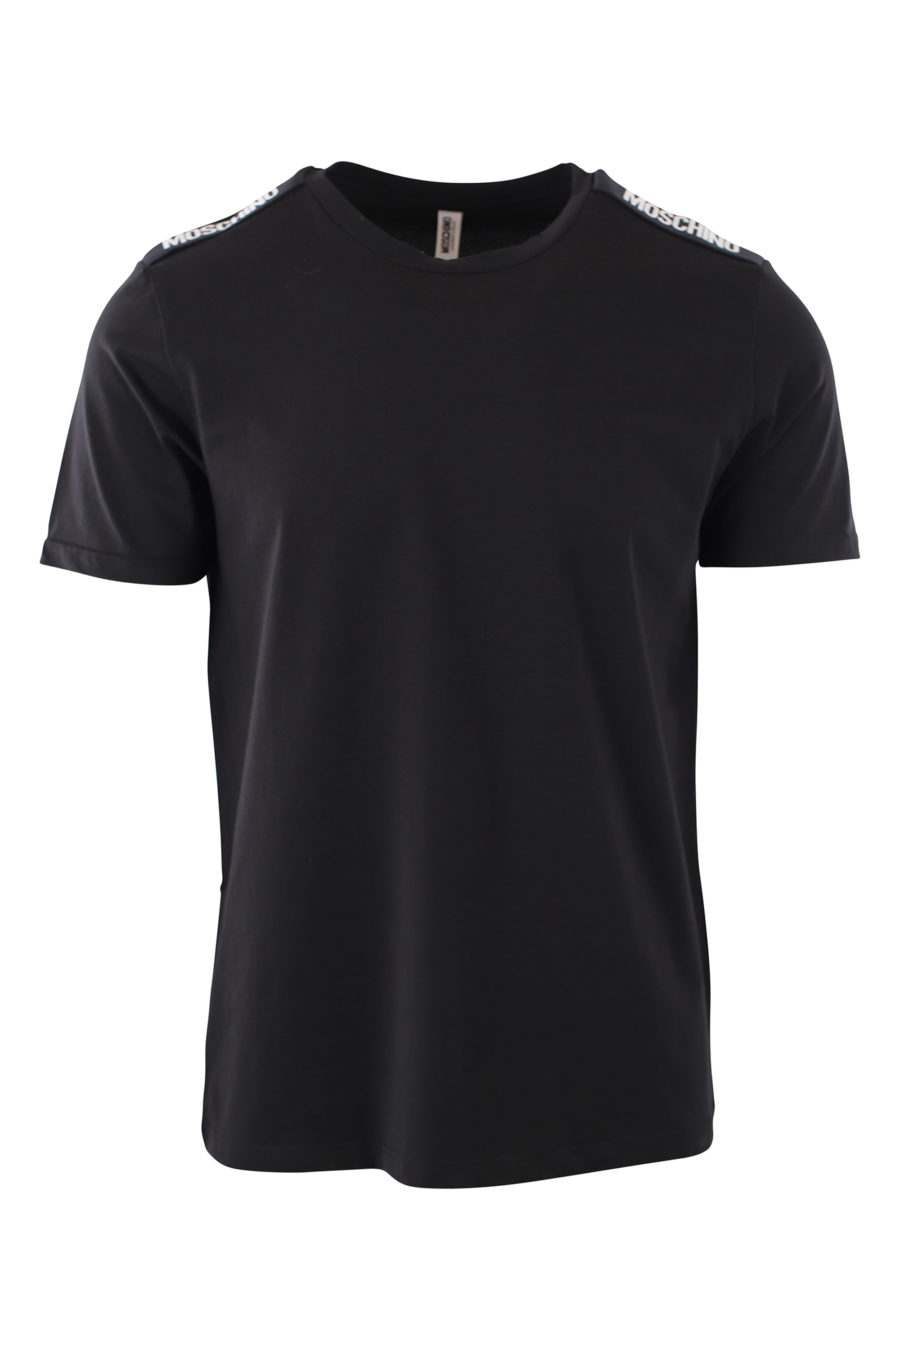 Camiseta negra con logo blanco en cinta en hombros - IMG 2433